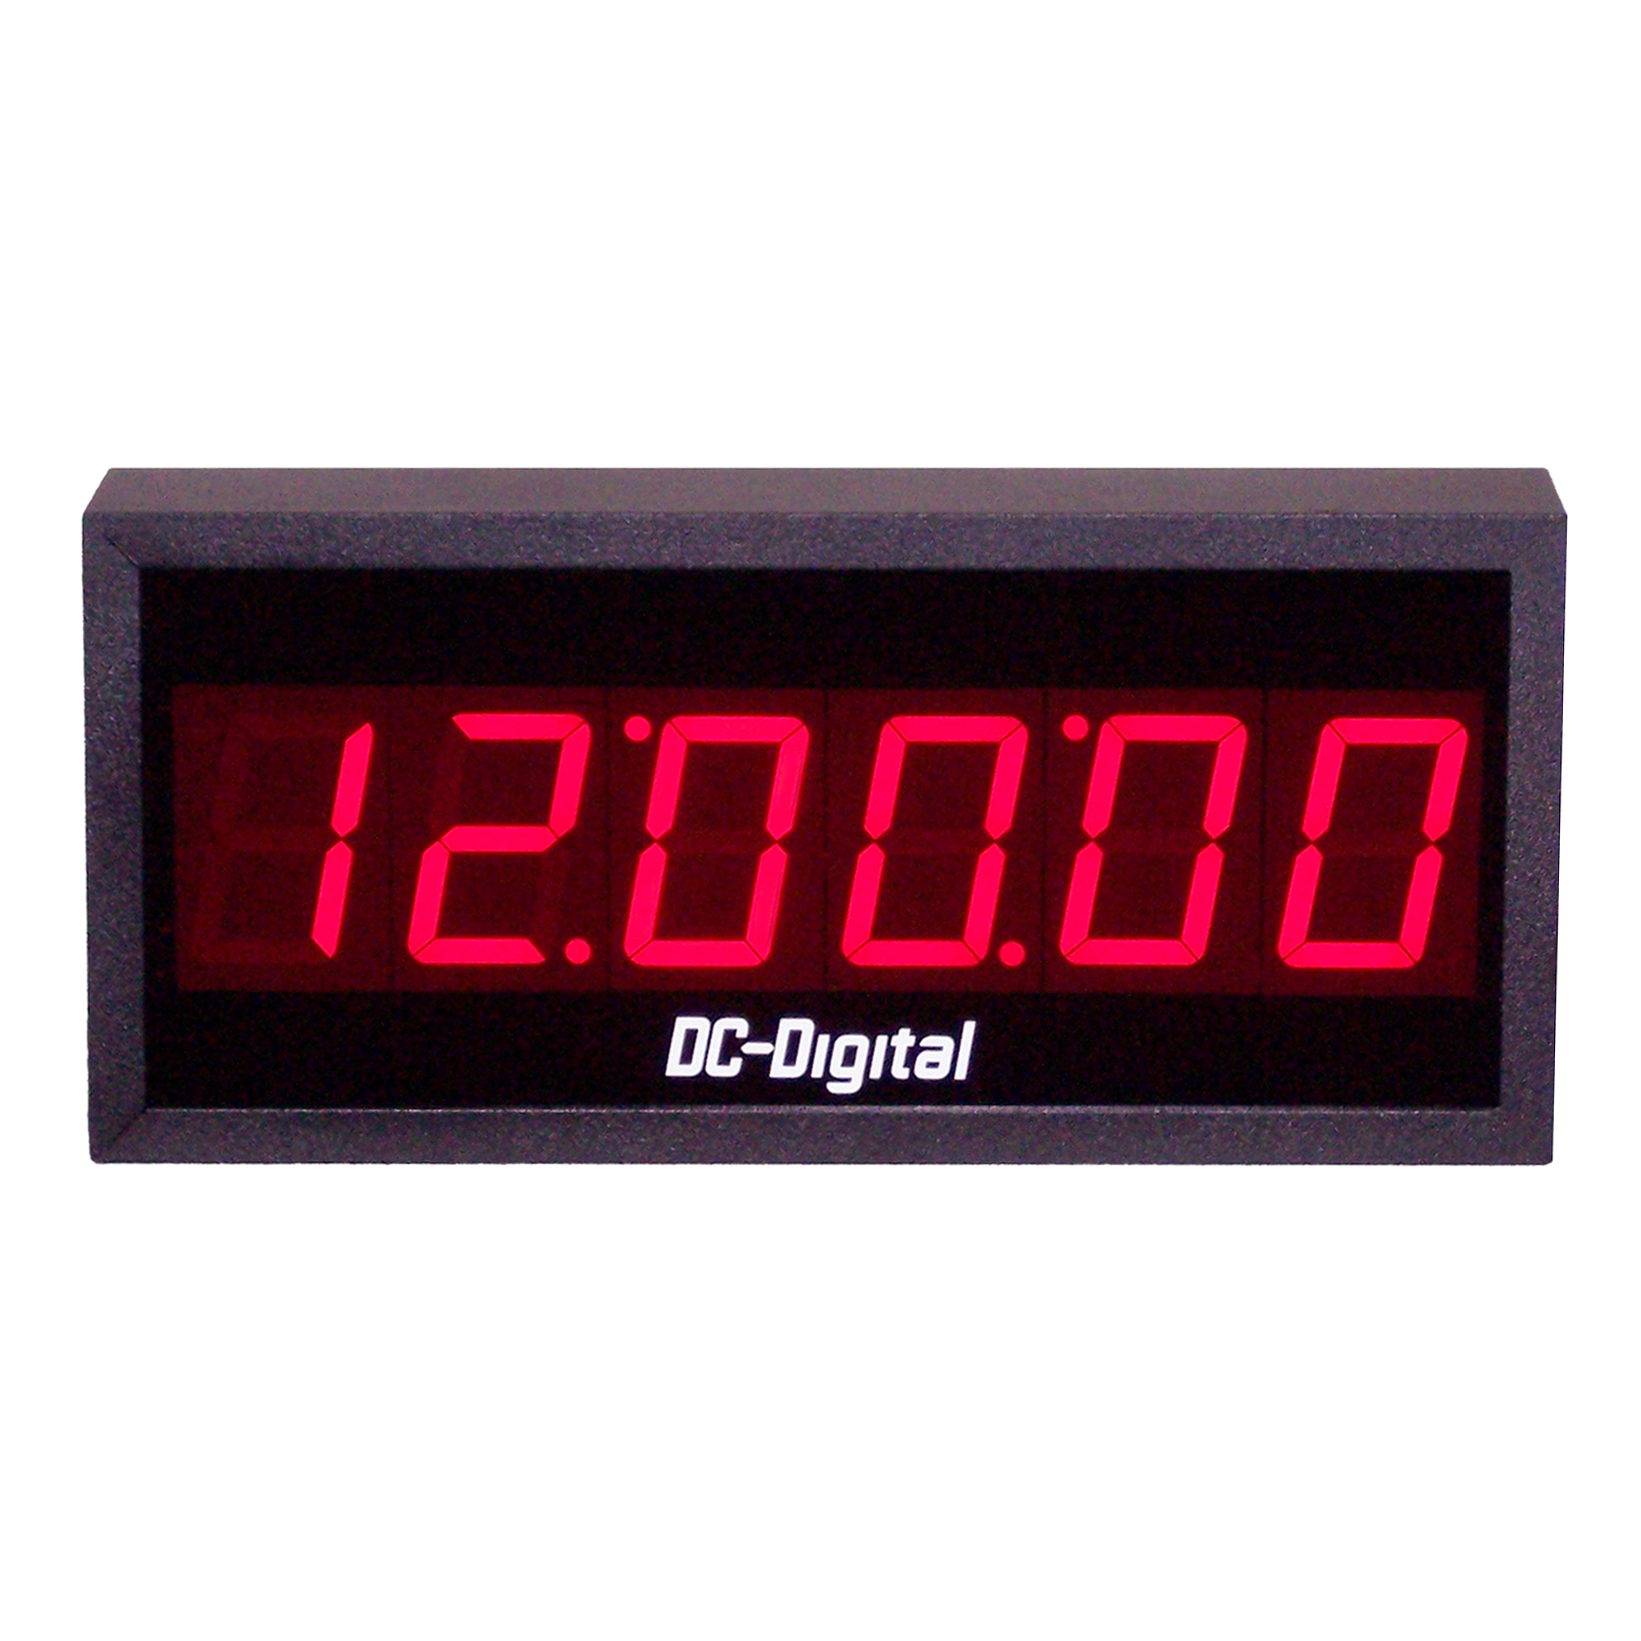 (DC-256-4W-System) 4-Wire Sync. System, Digital Clock, 2.3 Inch Digits